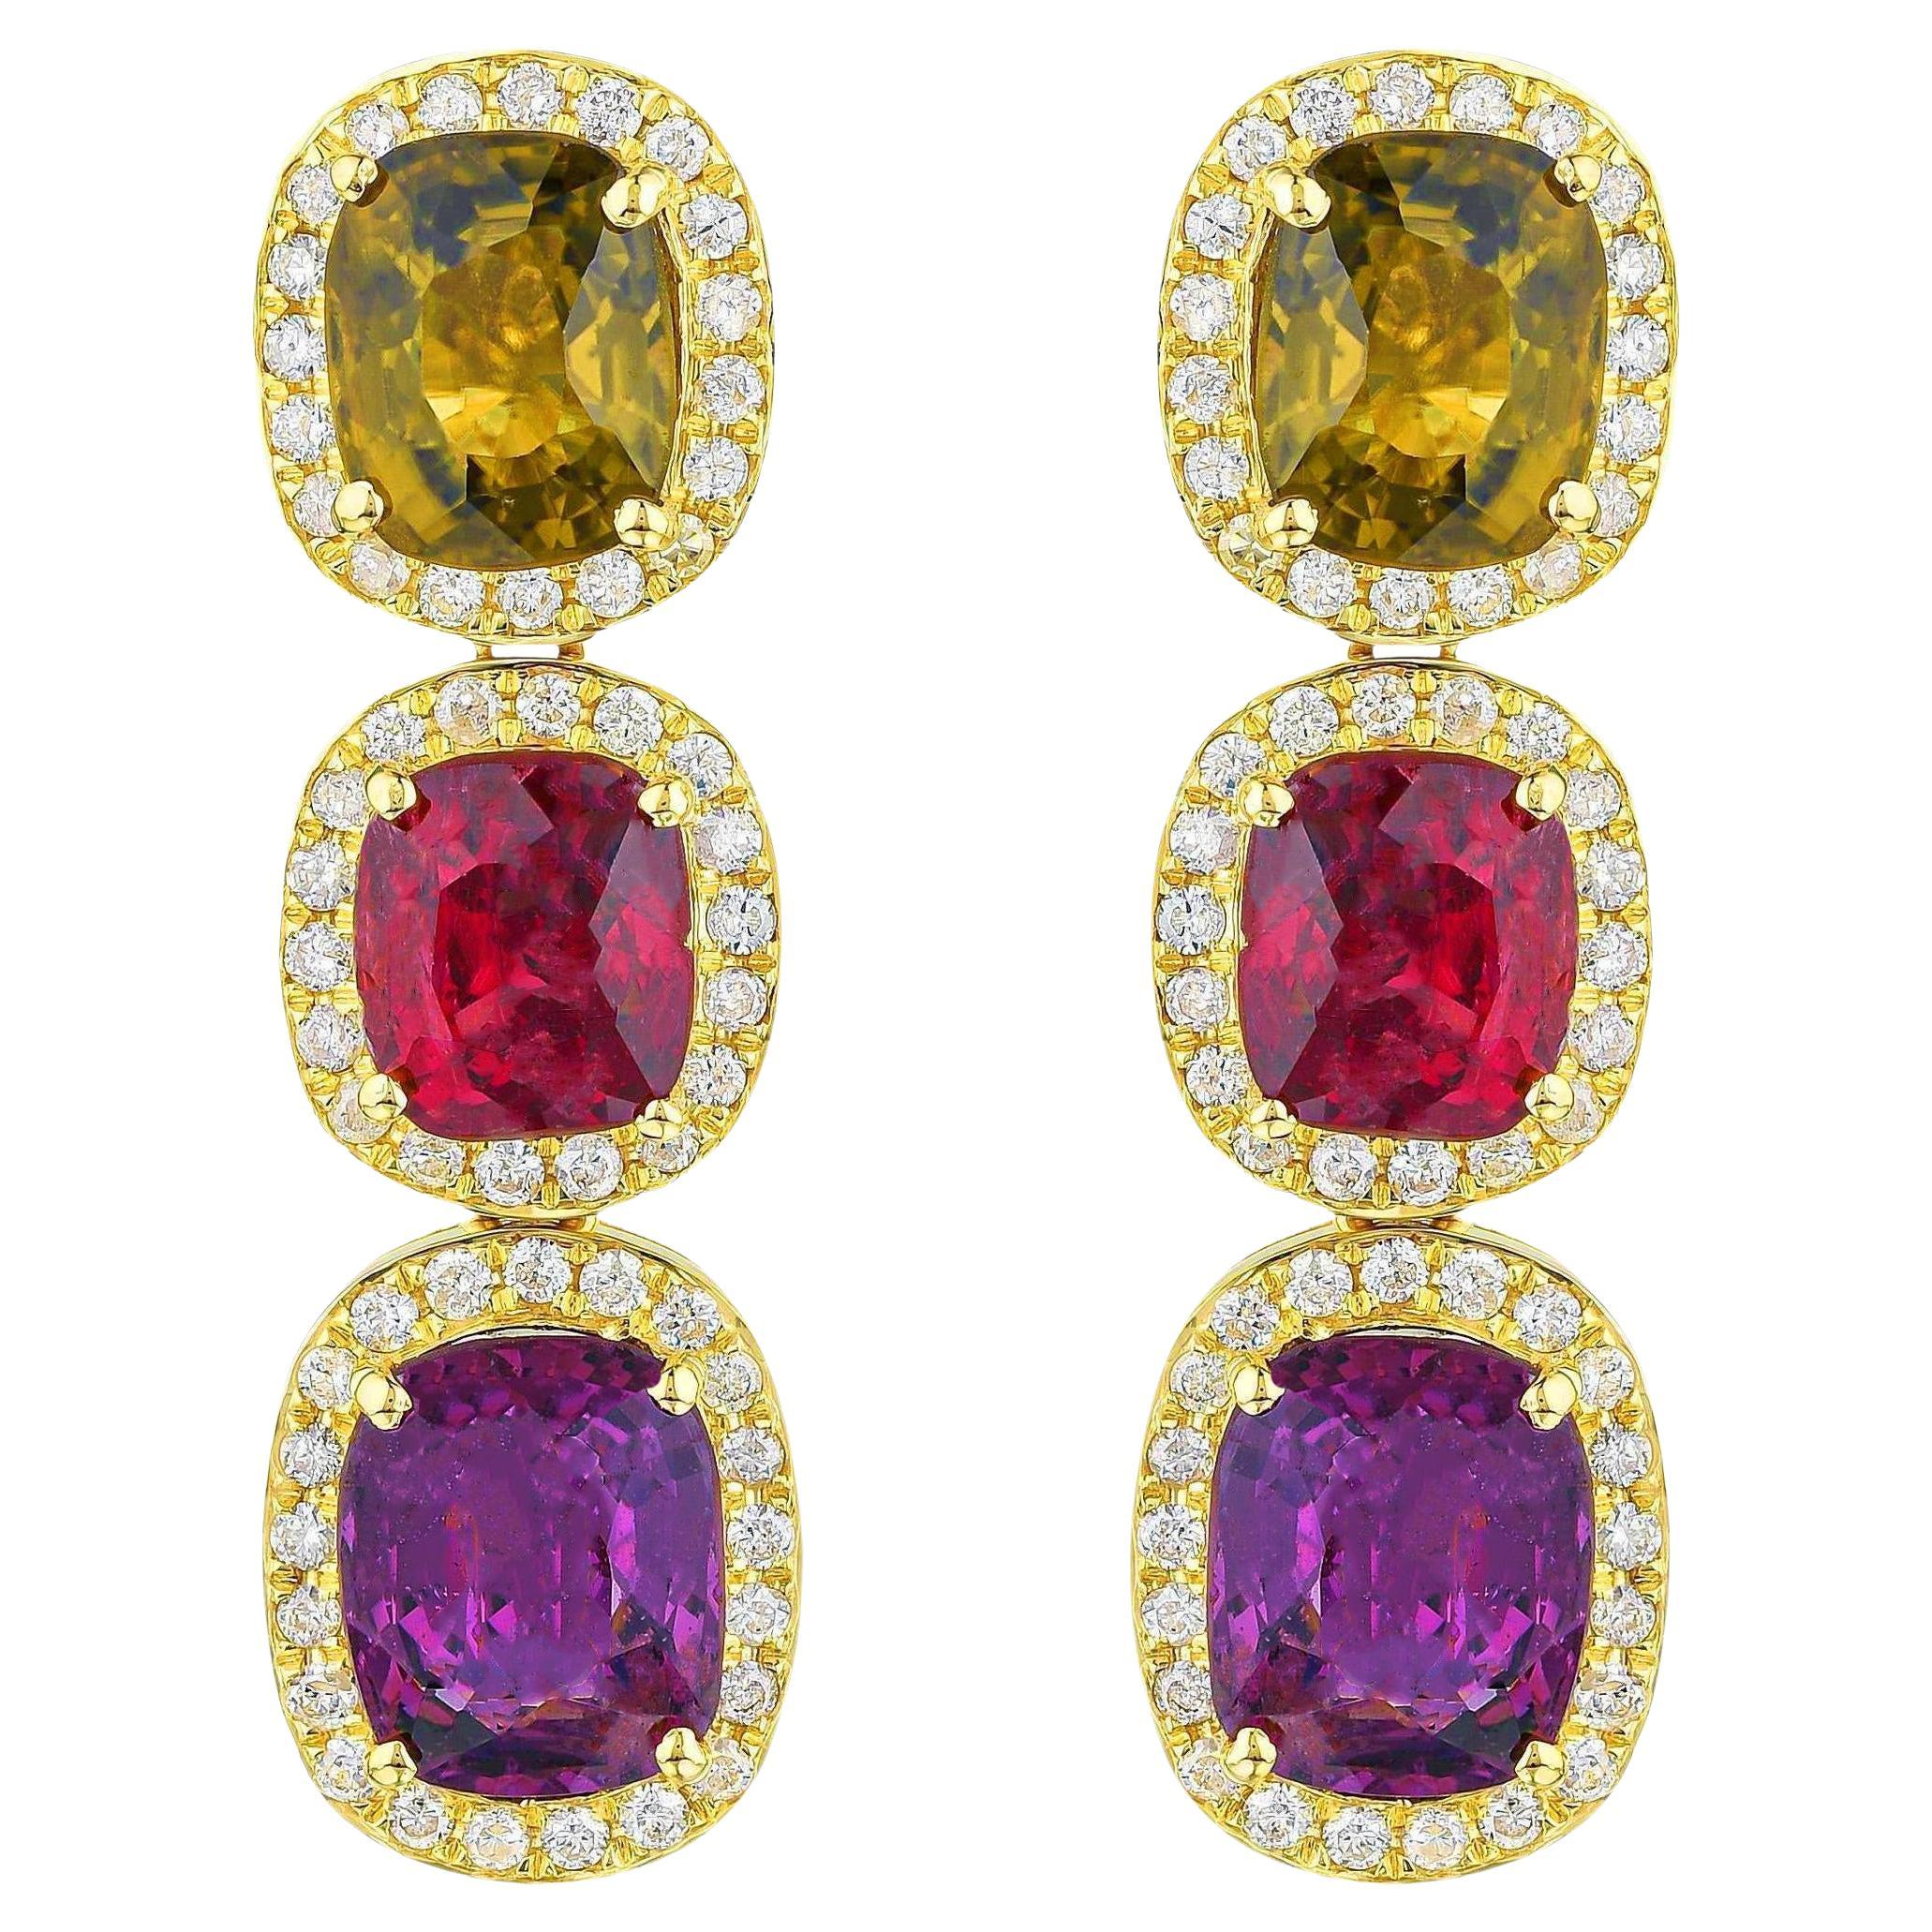 Boucles d'oreilles en or 18 carats avec spinelle naturelle multicolore et halo de diamants de 8,50 carats